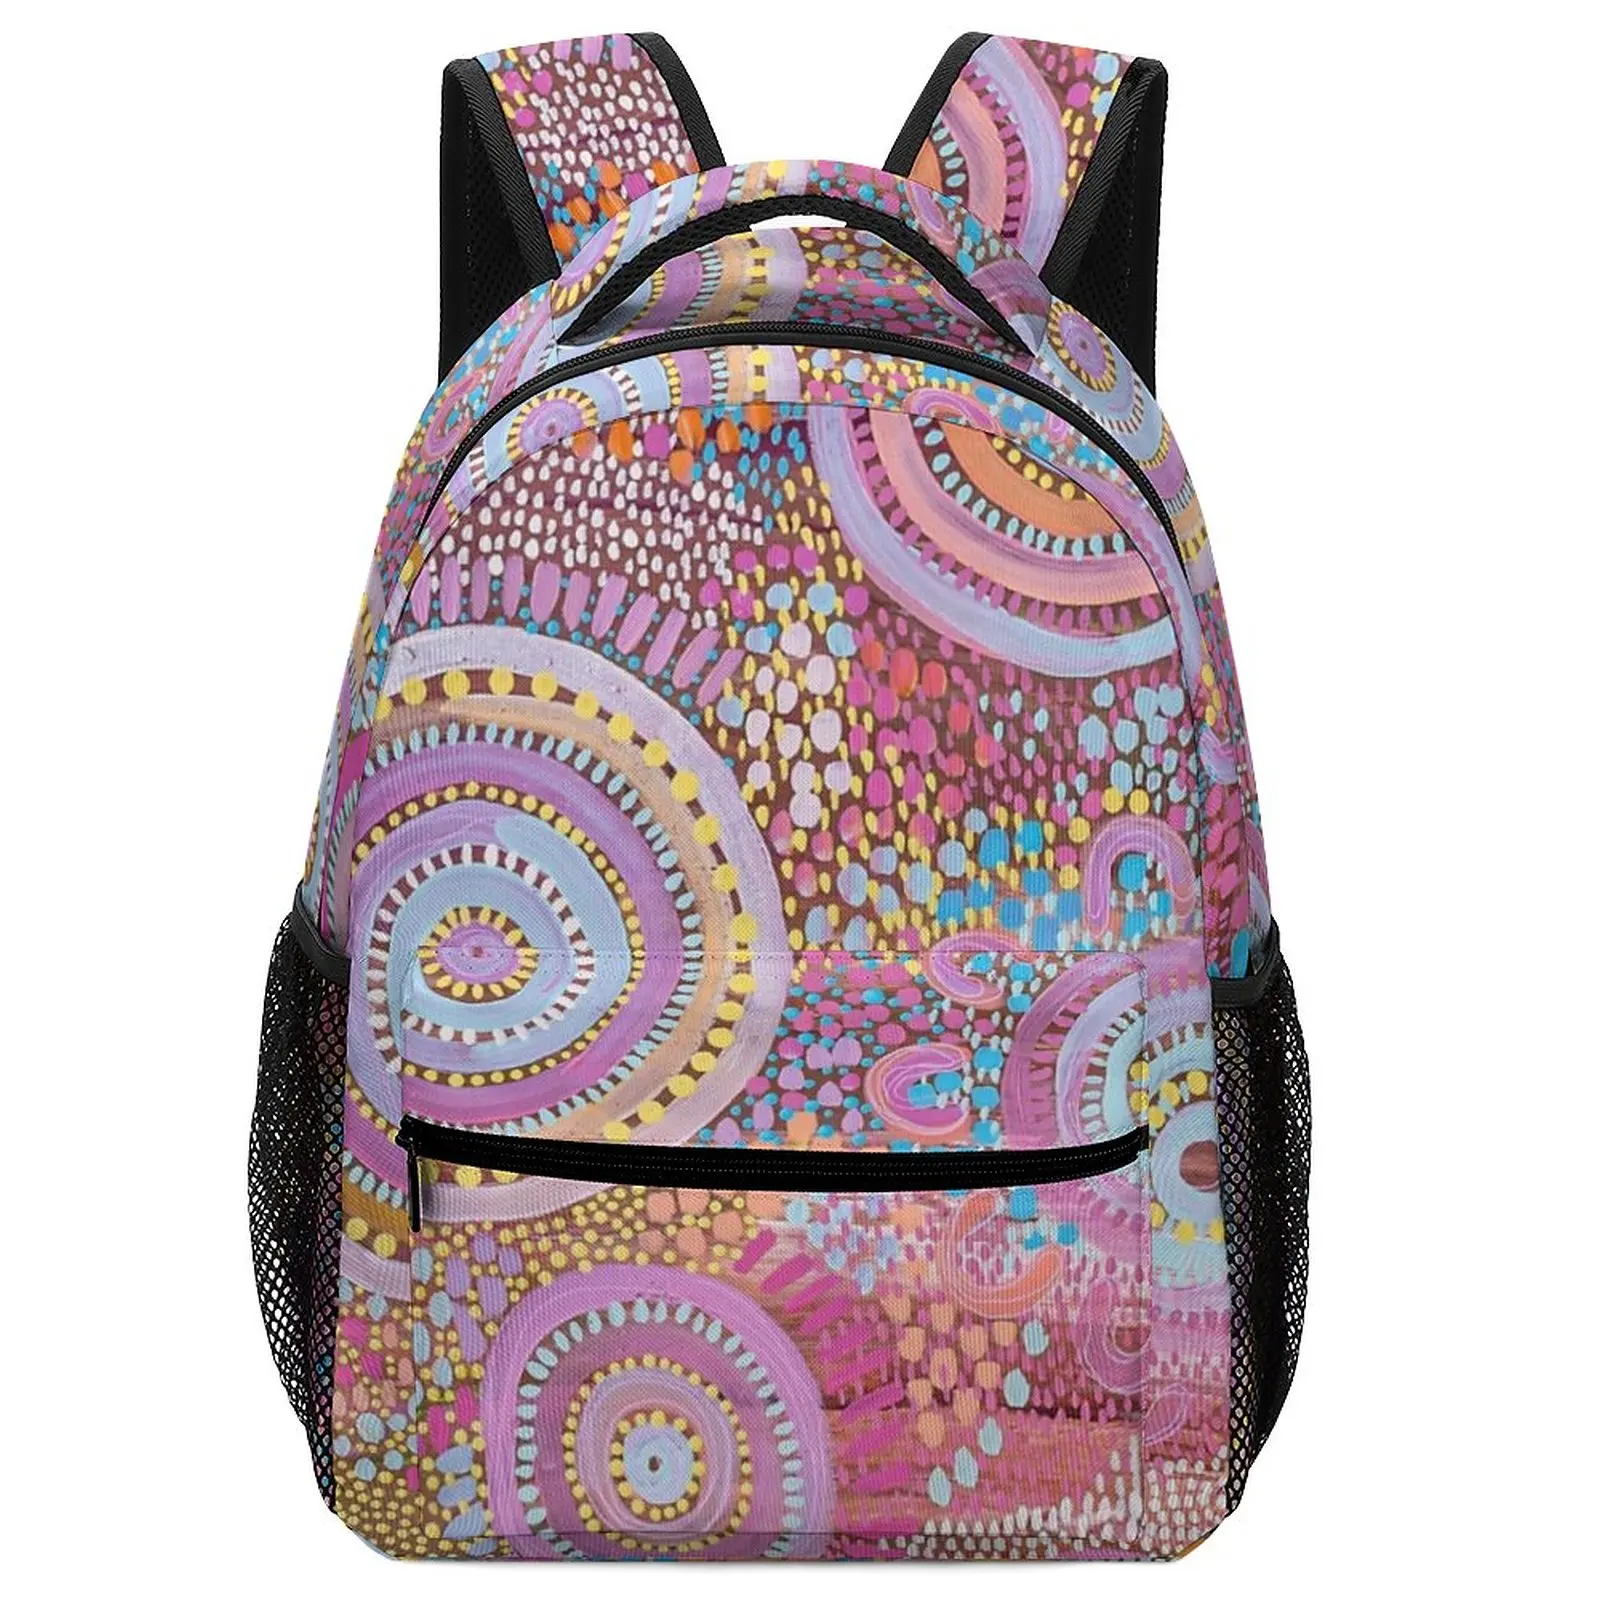 New Art Lets Find Seashells School Backpacks For Girls for Boys Children Men Women School Bags Backpacks Aesthetic